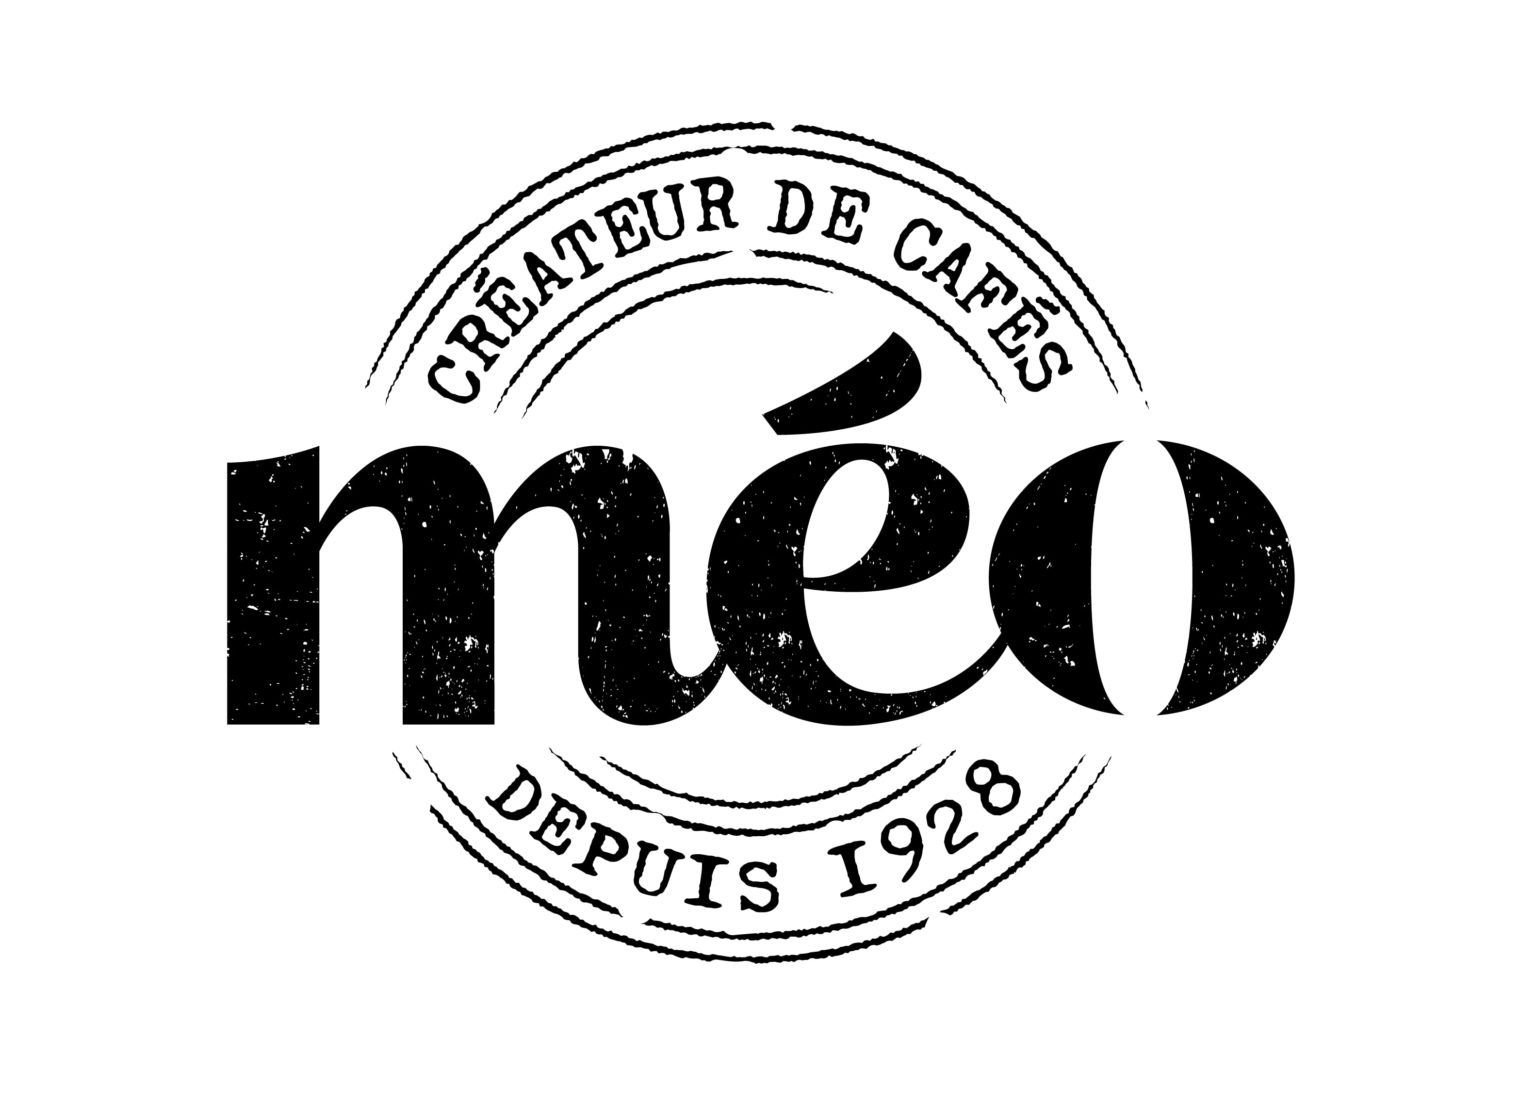 Photos of Cafés Méo